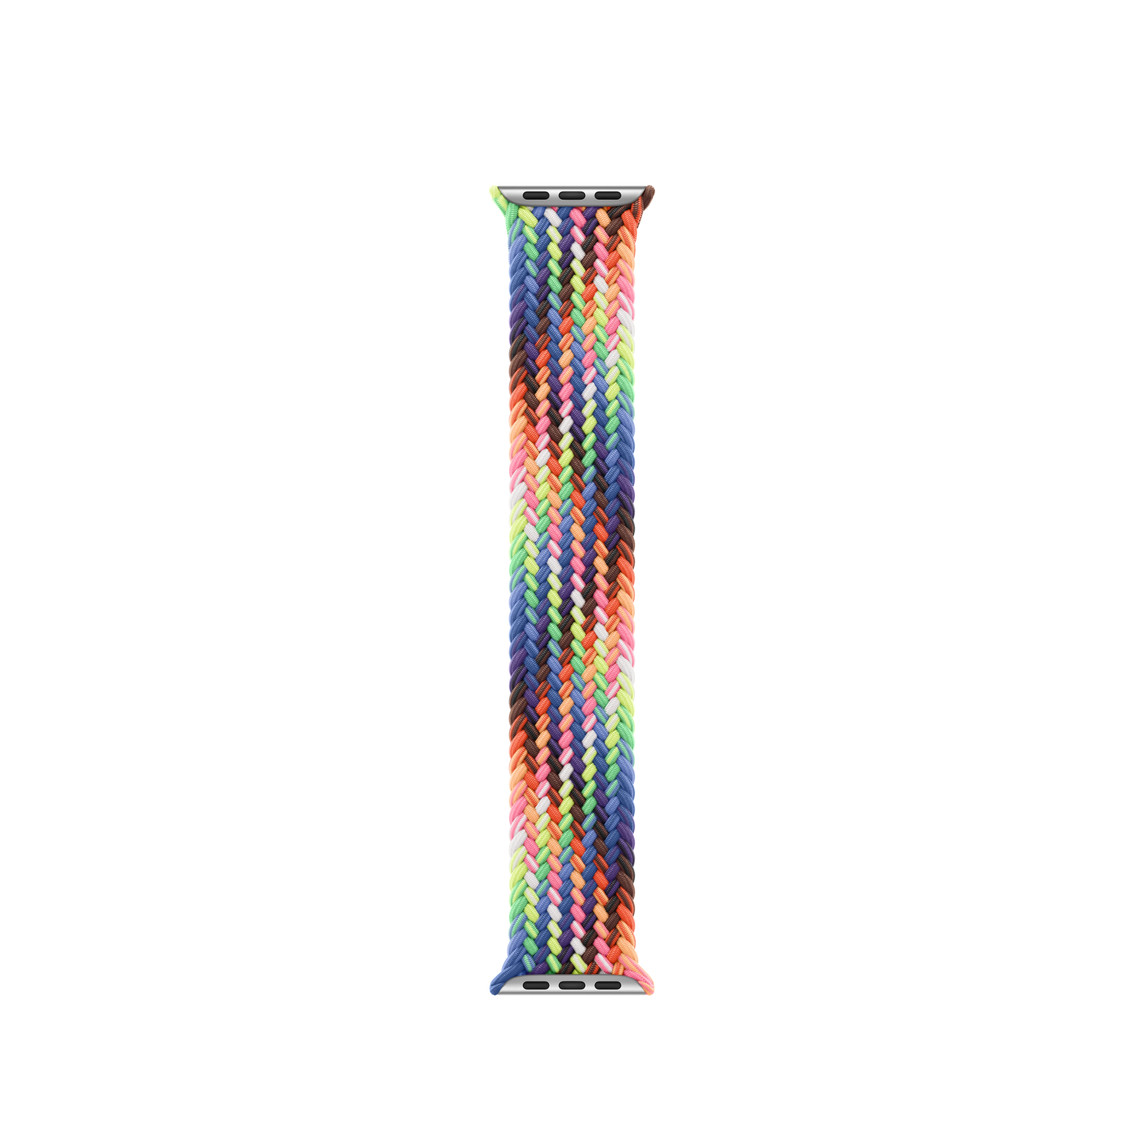 Vòng Bện Solo Pride Edition, các sợi được dệt thành một dải neon nhiều màu lấy cảm hứng từ cờ Cầu Vồng rực rỡ, không có móc cài hoặc khóa